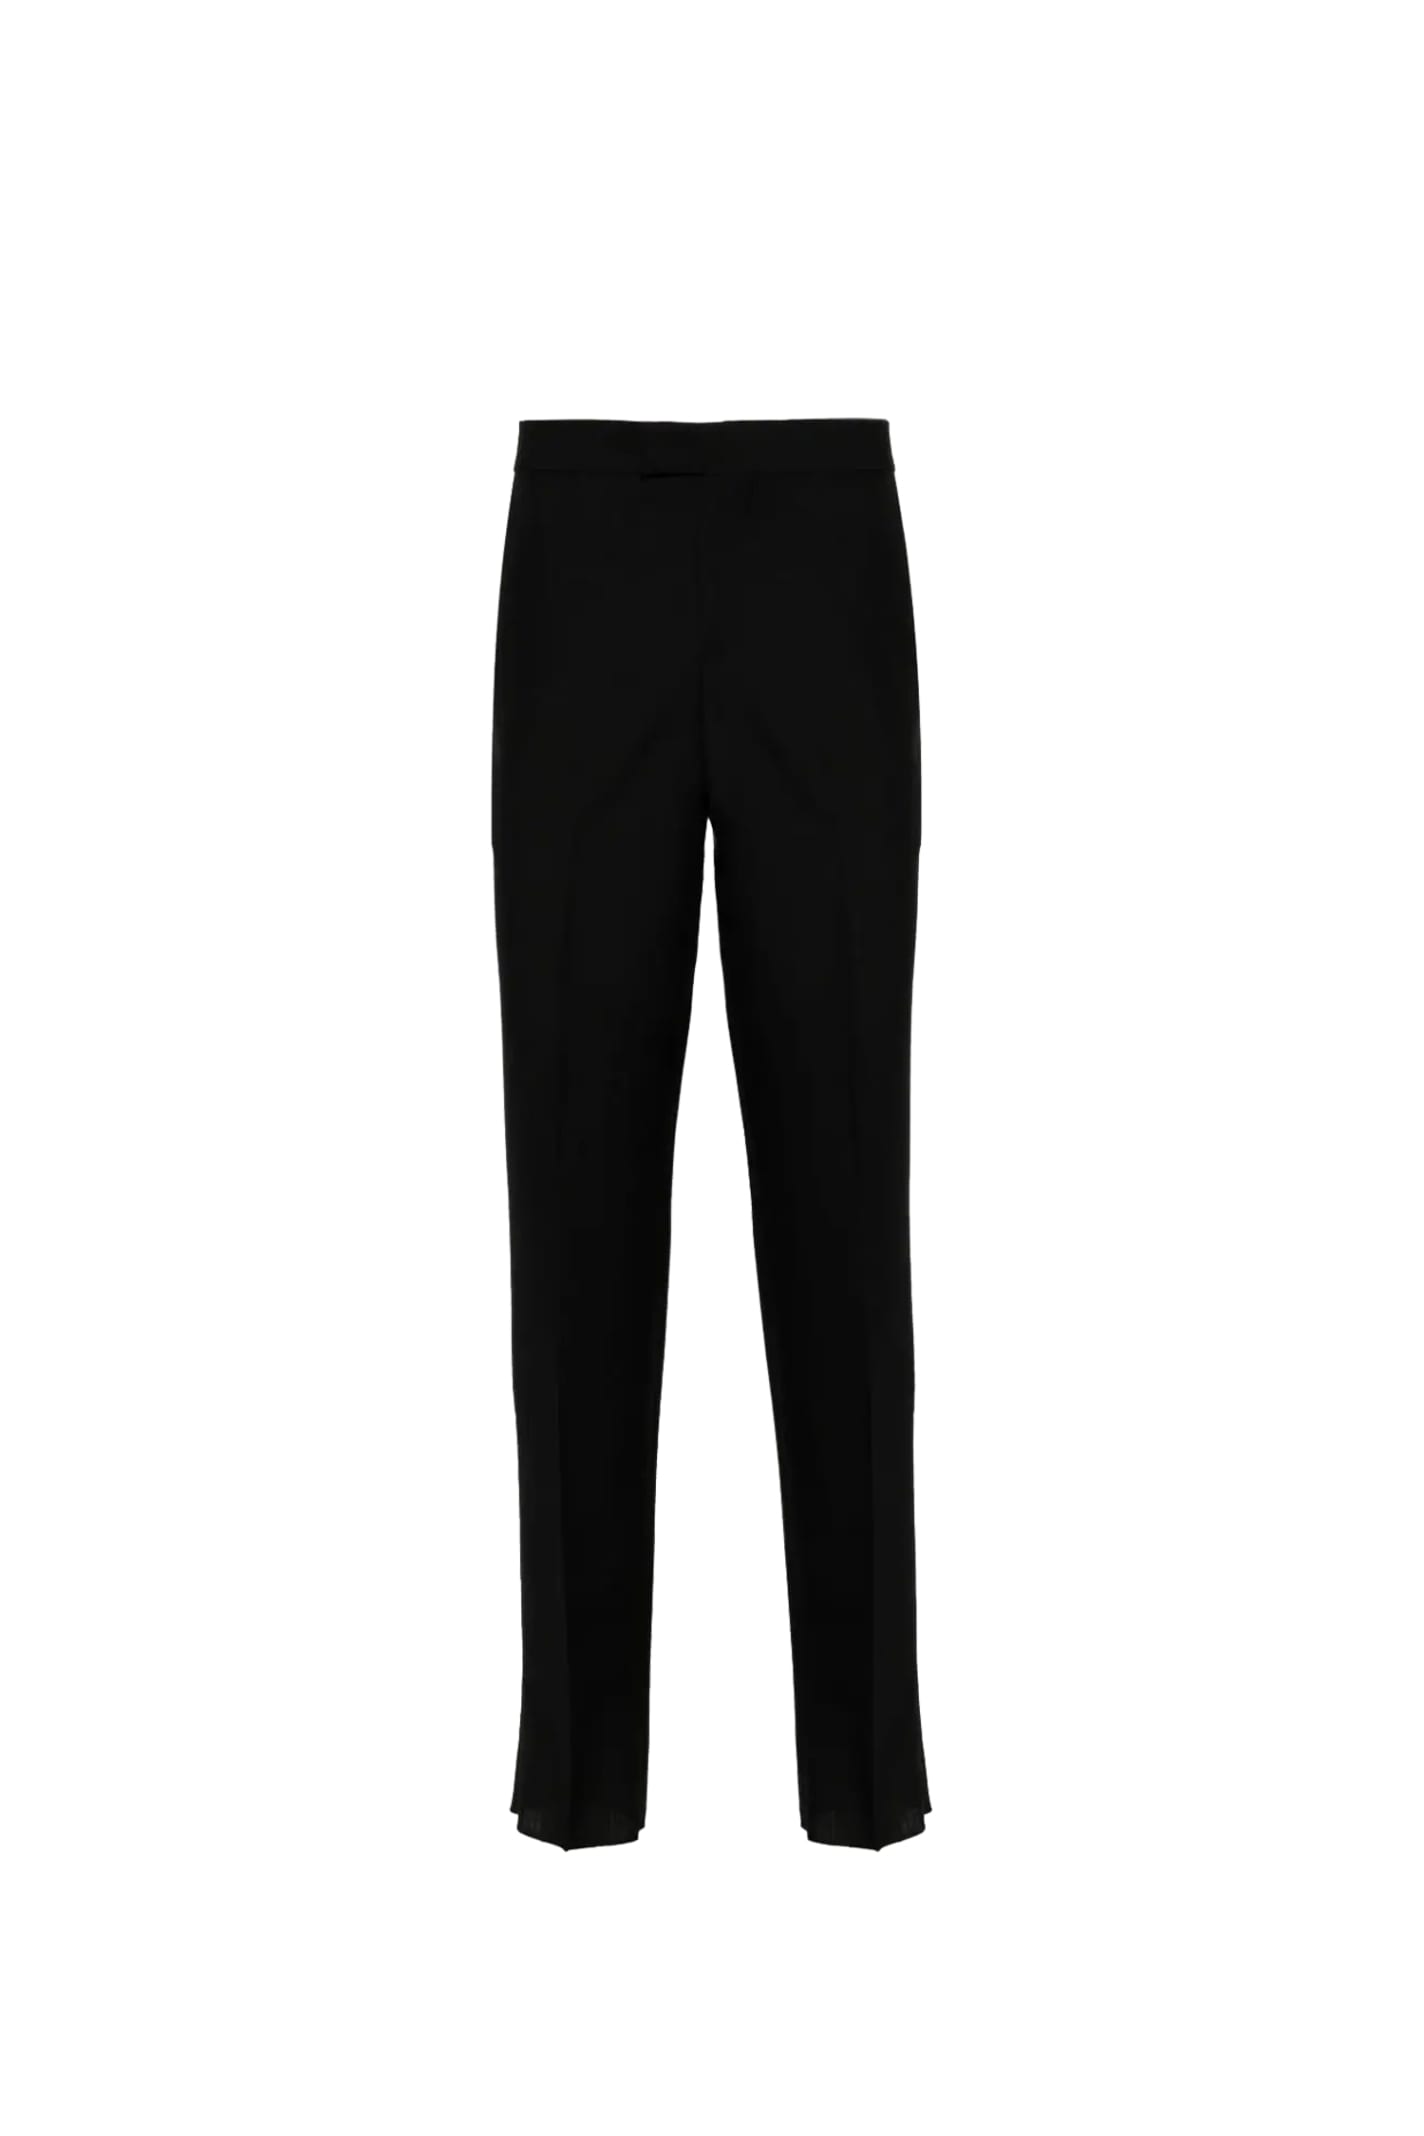 Lardini Pants In Black